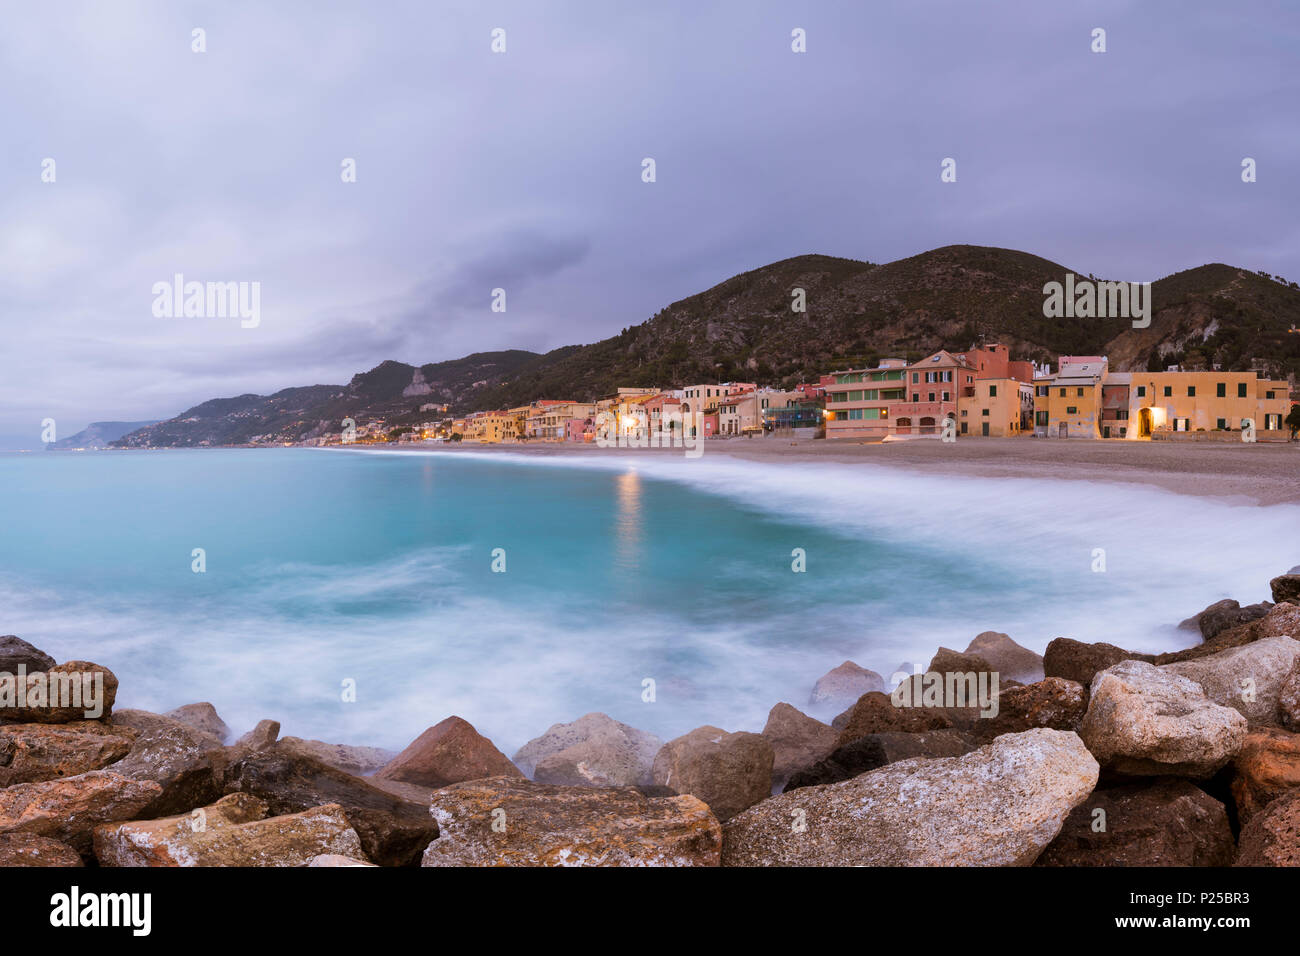 Typische Häuser am Strand, La Spezia, Provinz von Savona, Ligurien,  Italien, Europa Stockfotografie - Alamy